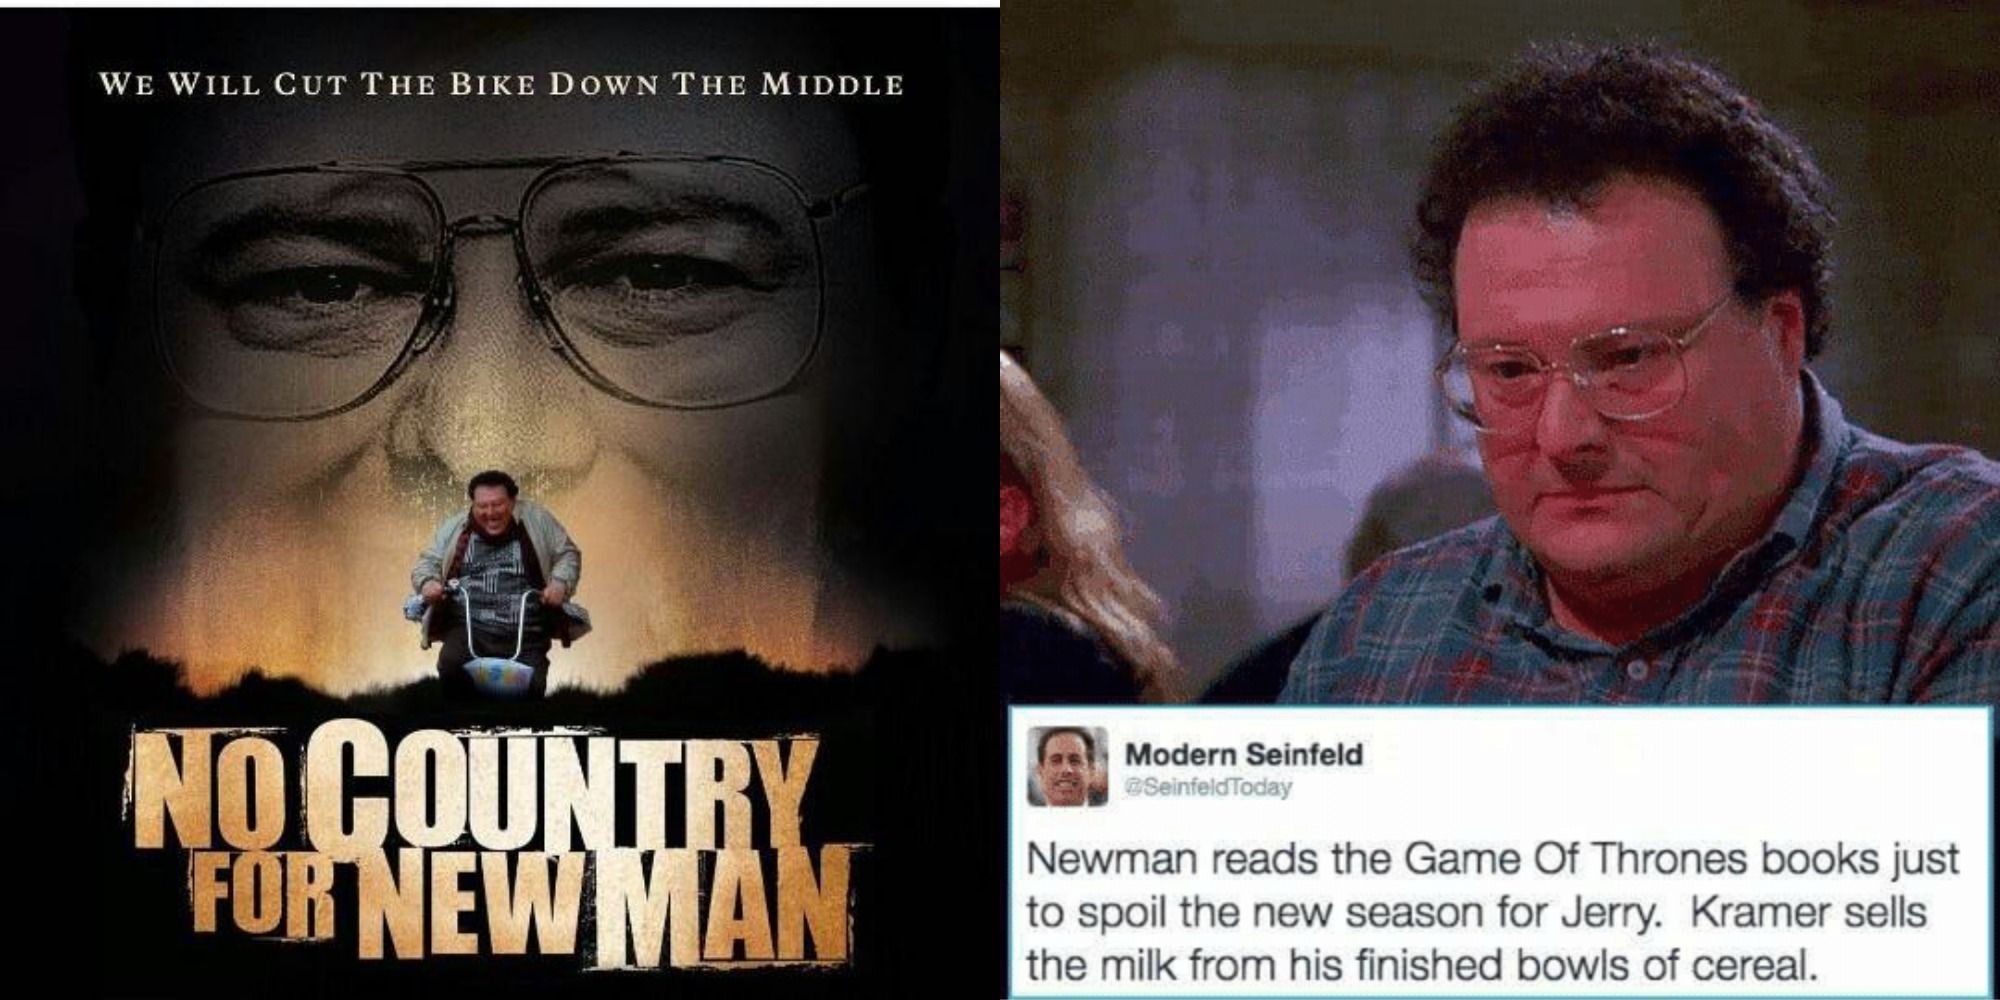 A split image of hilarious Newman memes